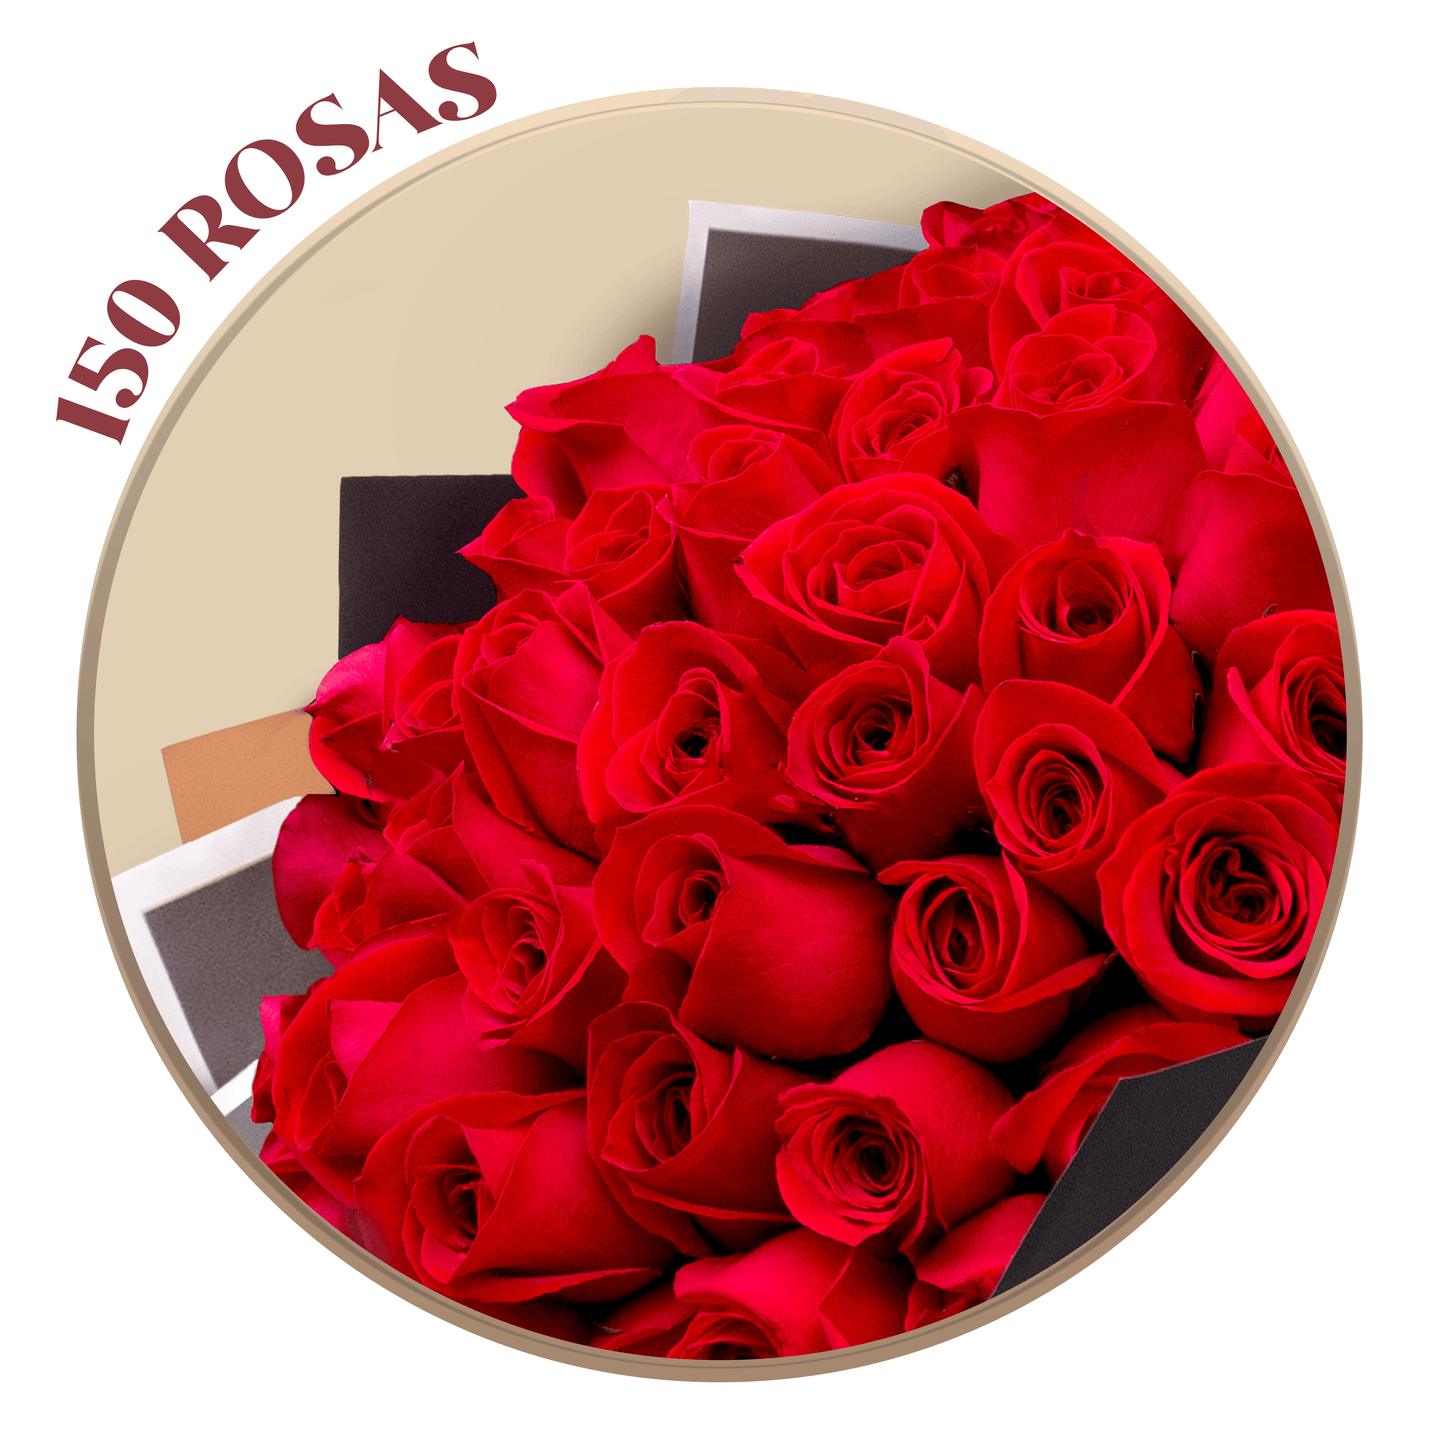 150 Rosas Rojas en ramillete Ponch y Caprico flores a domicilio